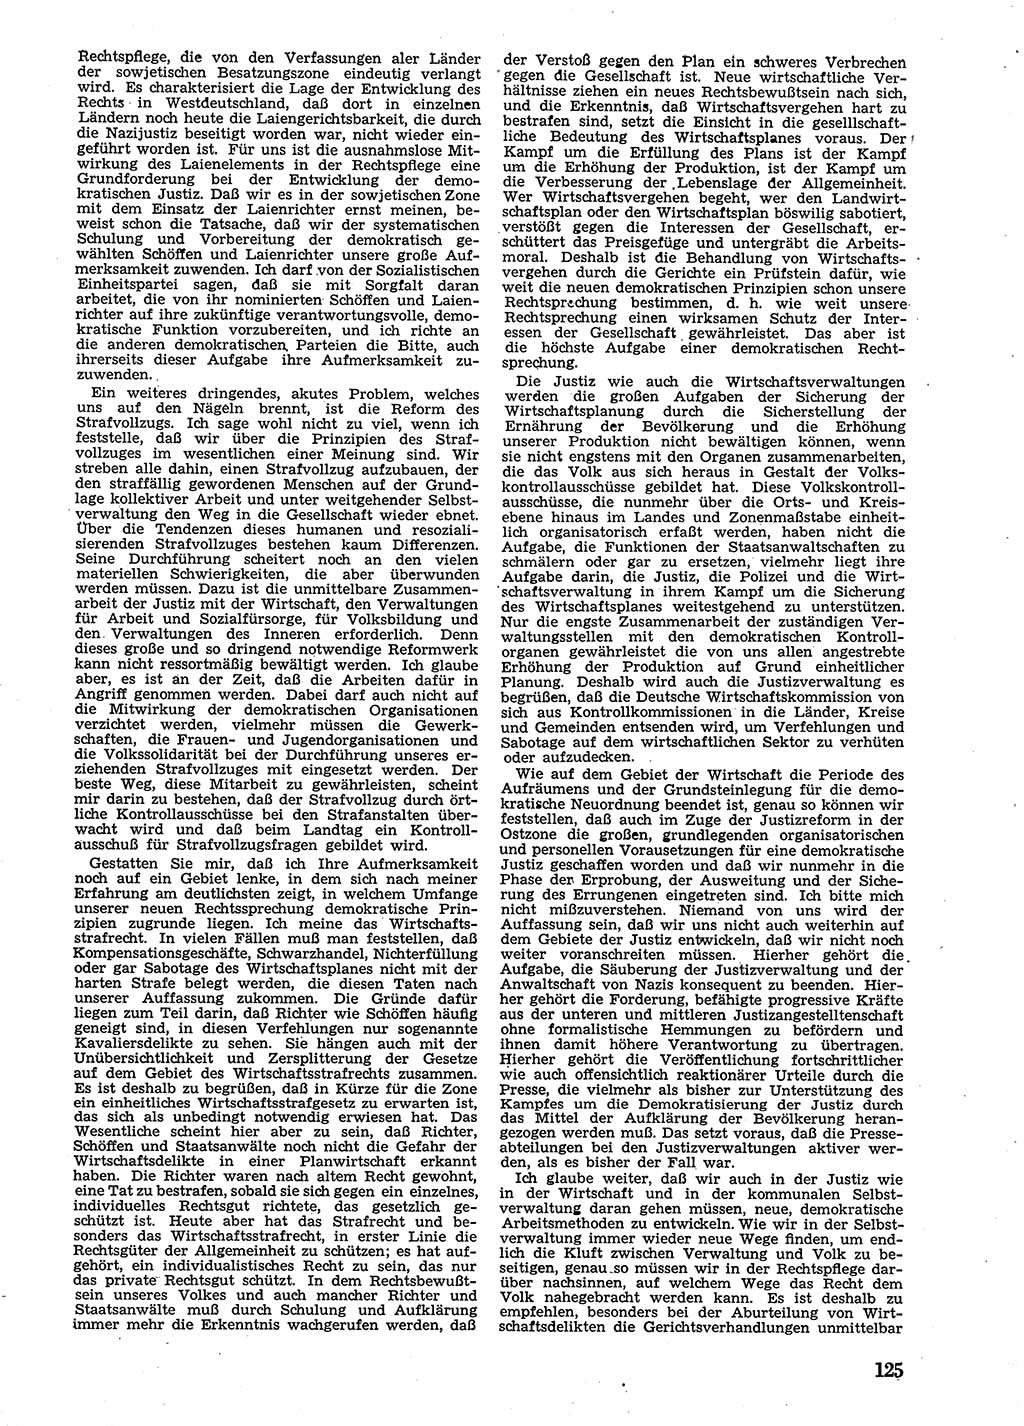 Neue Justiz (NJ), Zeitschrift für Recht und Rechtswissenschaft [Sowjetische Besatzungszone (SBZ) Deutschland], 2. Jahrgang 1948, Seite 125 (NJ SBZ Dtl. 1948, S. 125)